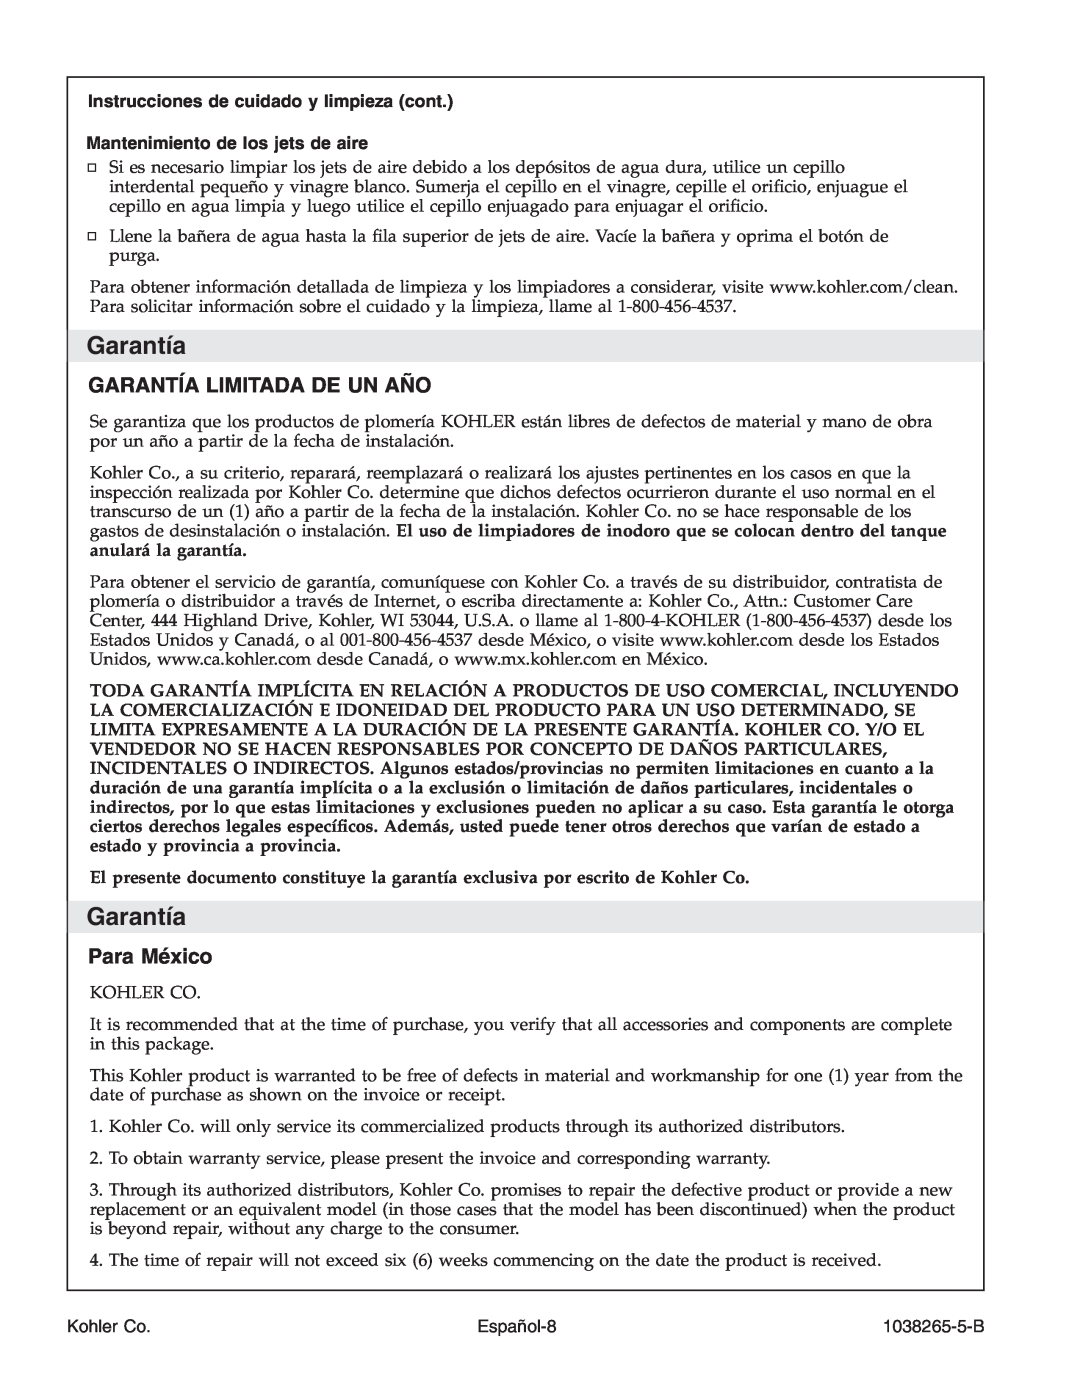 Kohler K-1375 manual Garantía Limitada De Un Año, Para México, Instrucciones de cuidado y limpieza cont 